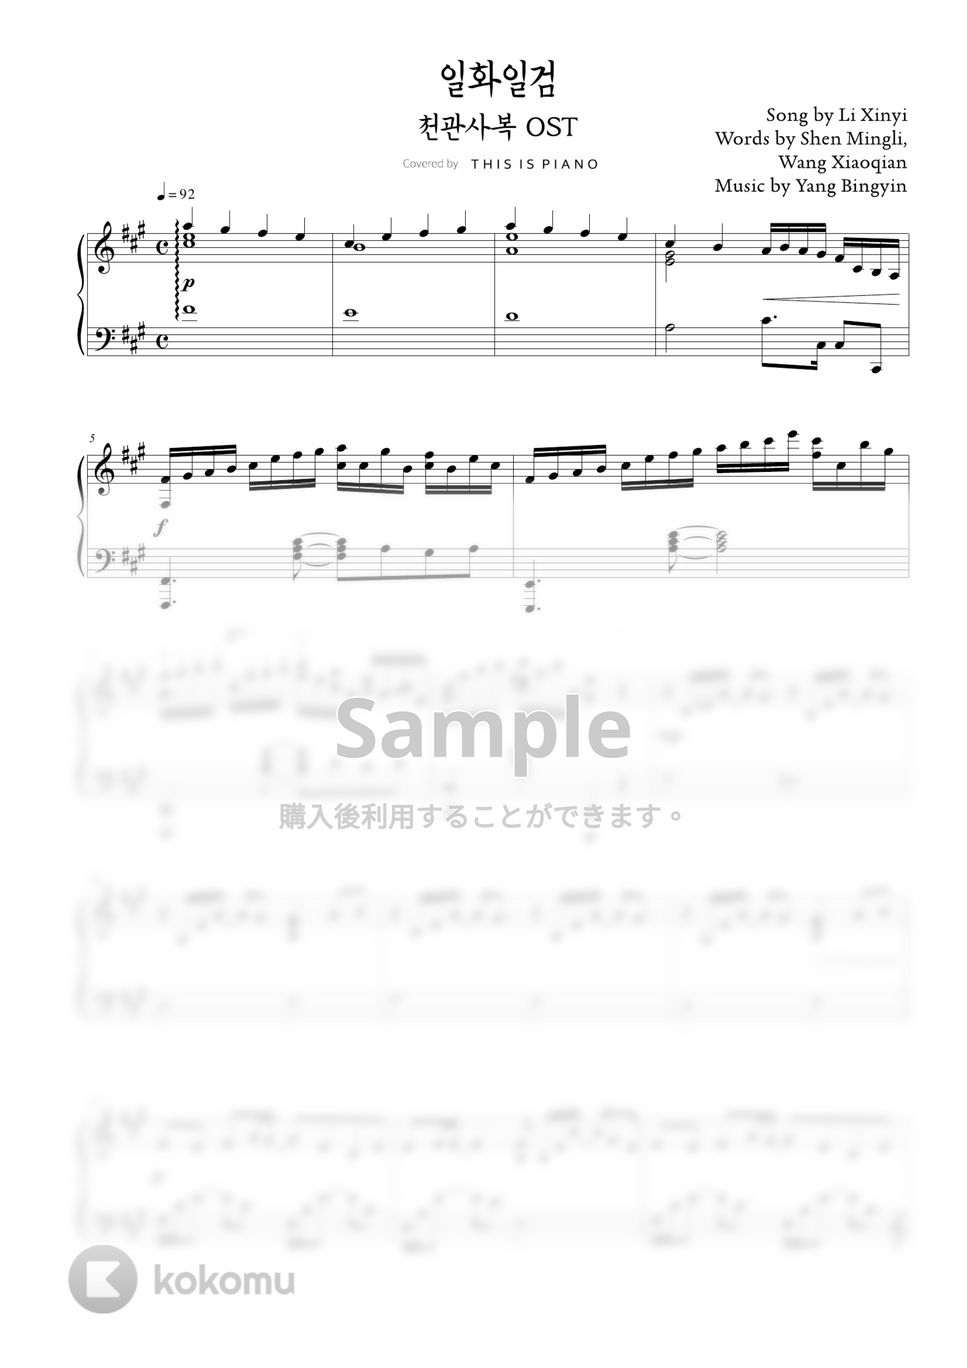 天官赐福 (Heaven Official’s Blessing) - 一花一剣 (One flower One sword) by THIS IS PIANO